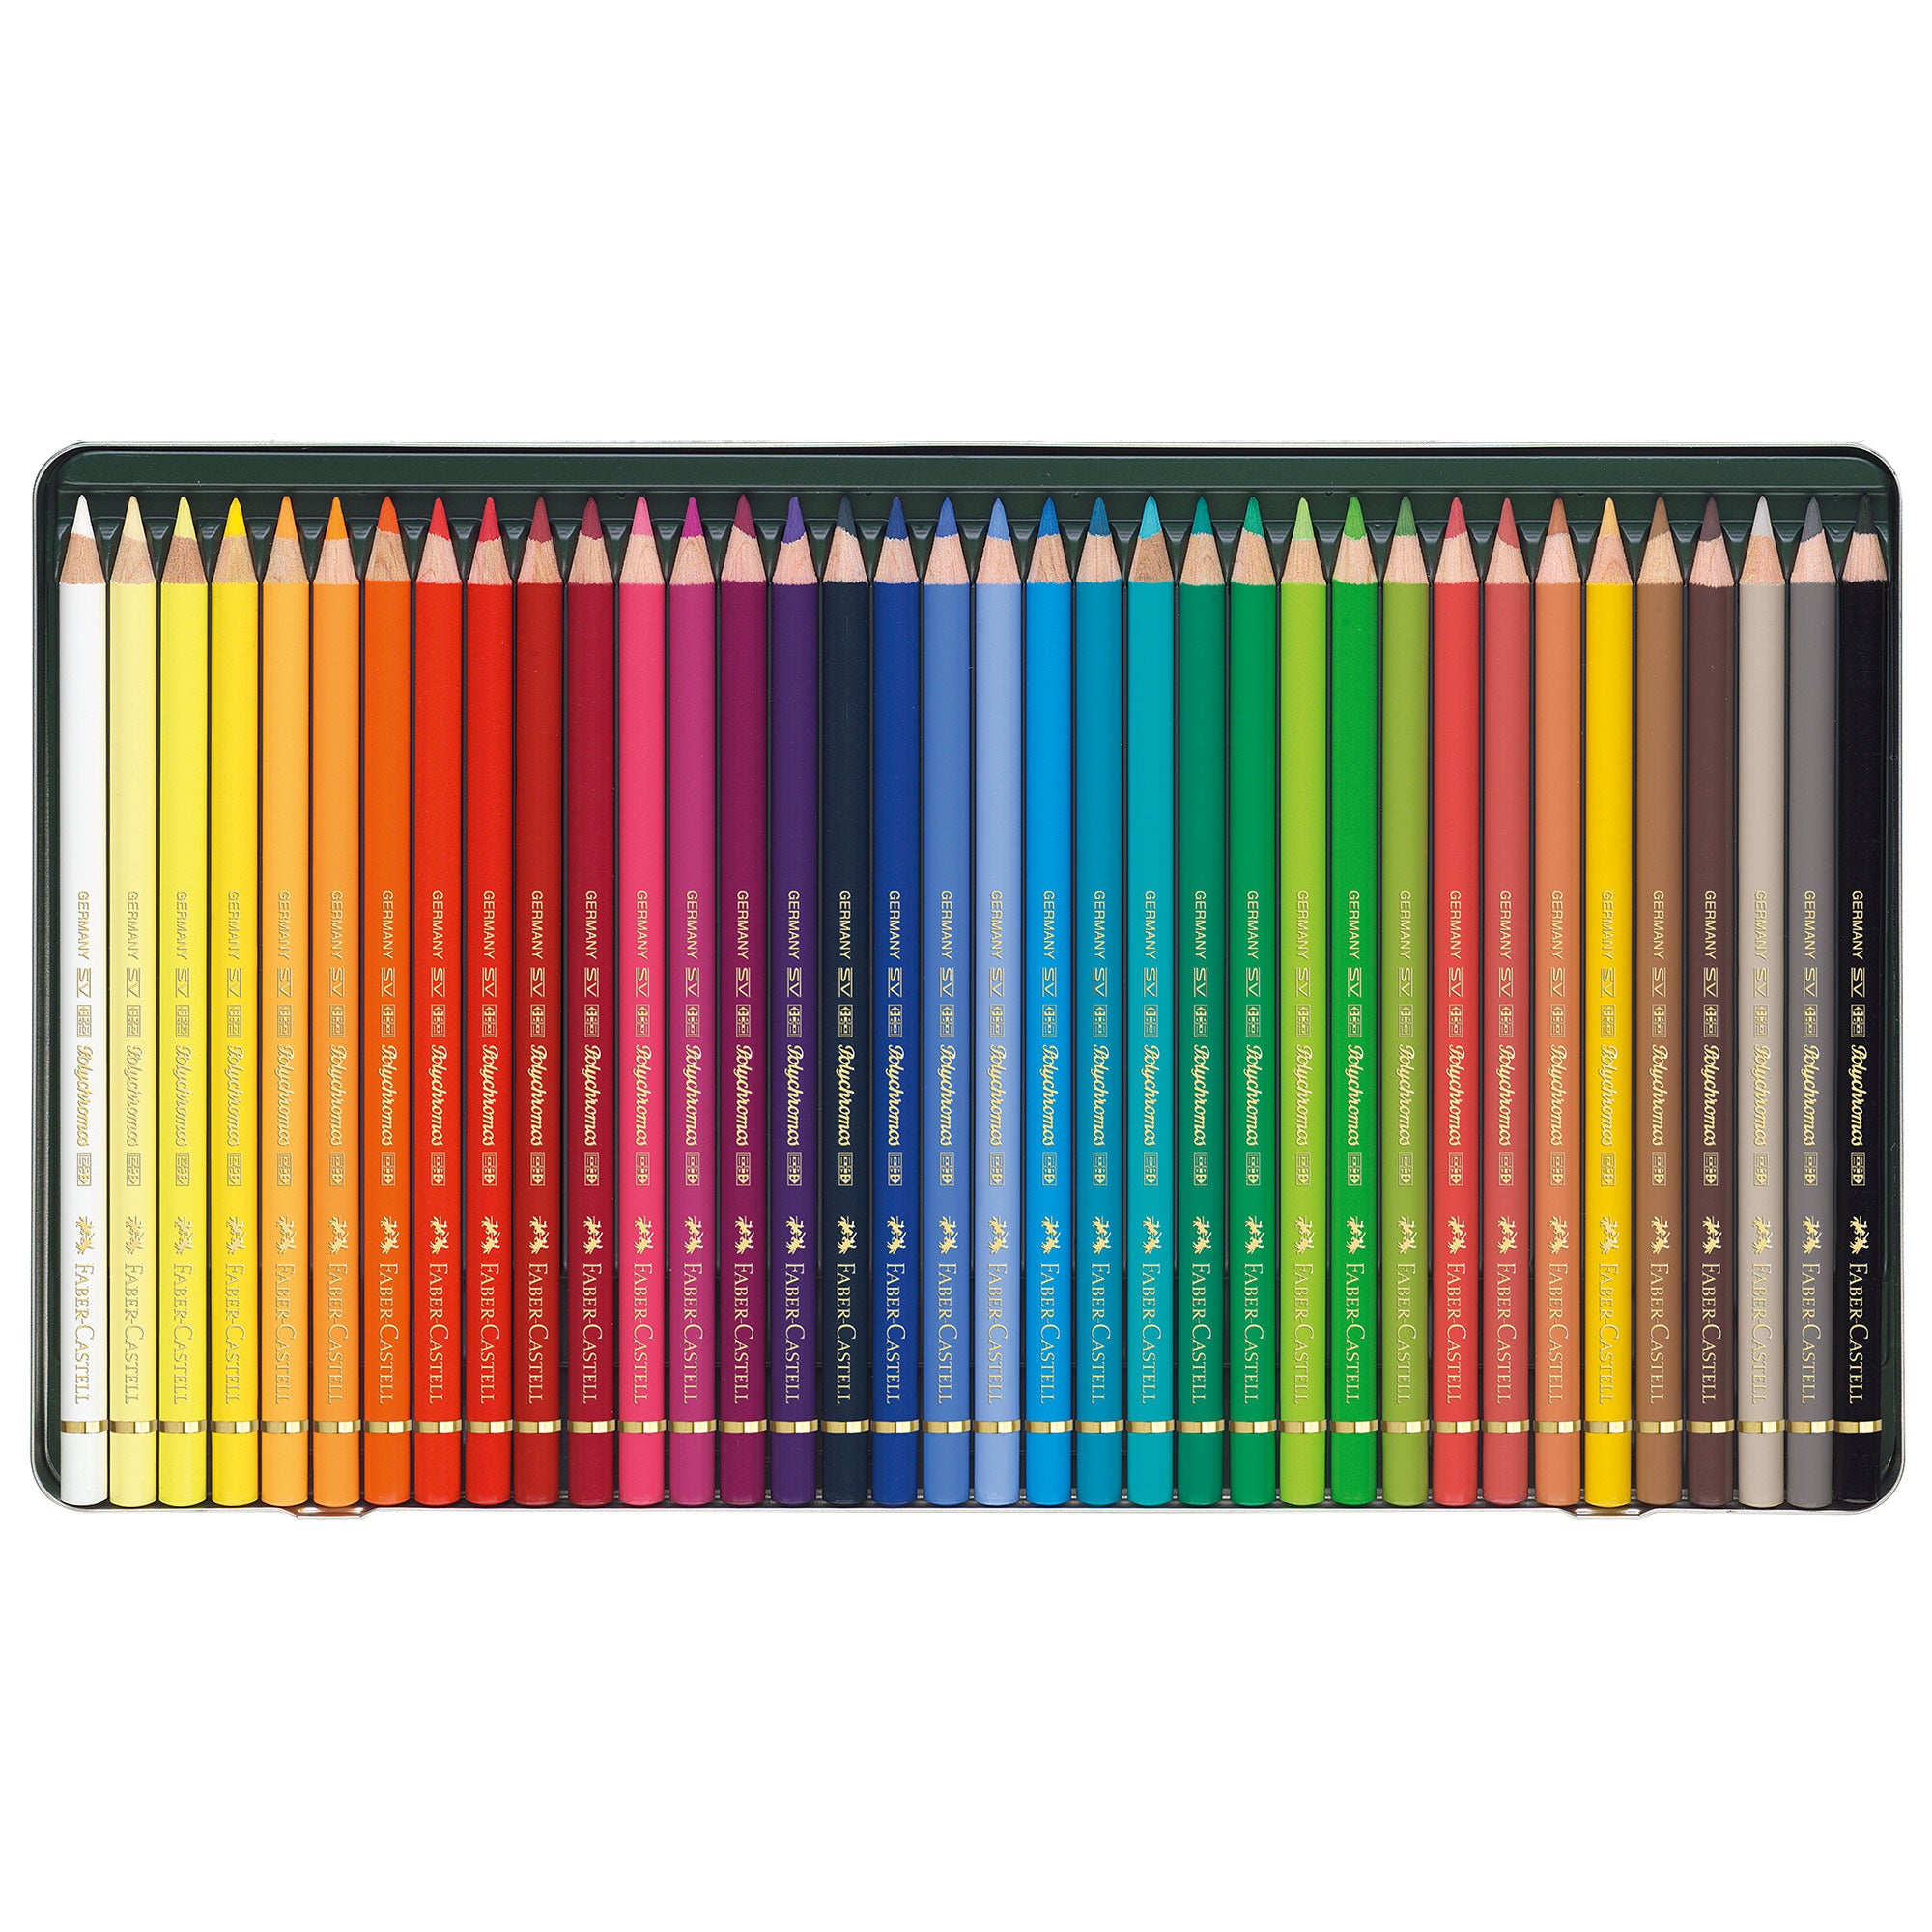 Faber-Castell Polychromos Artists Pencil Set of 36 - Pencils Closeup